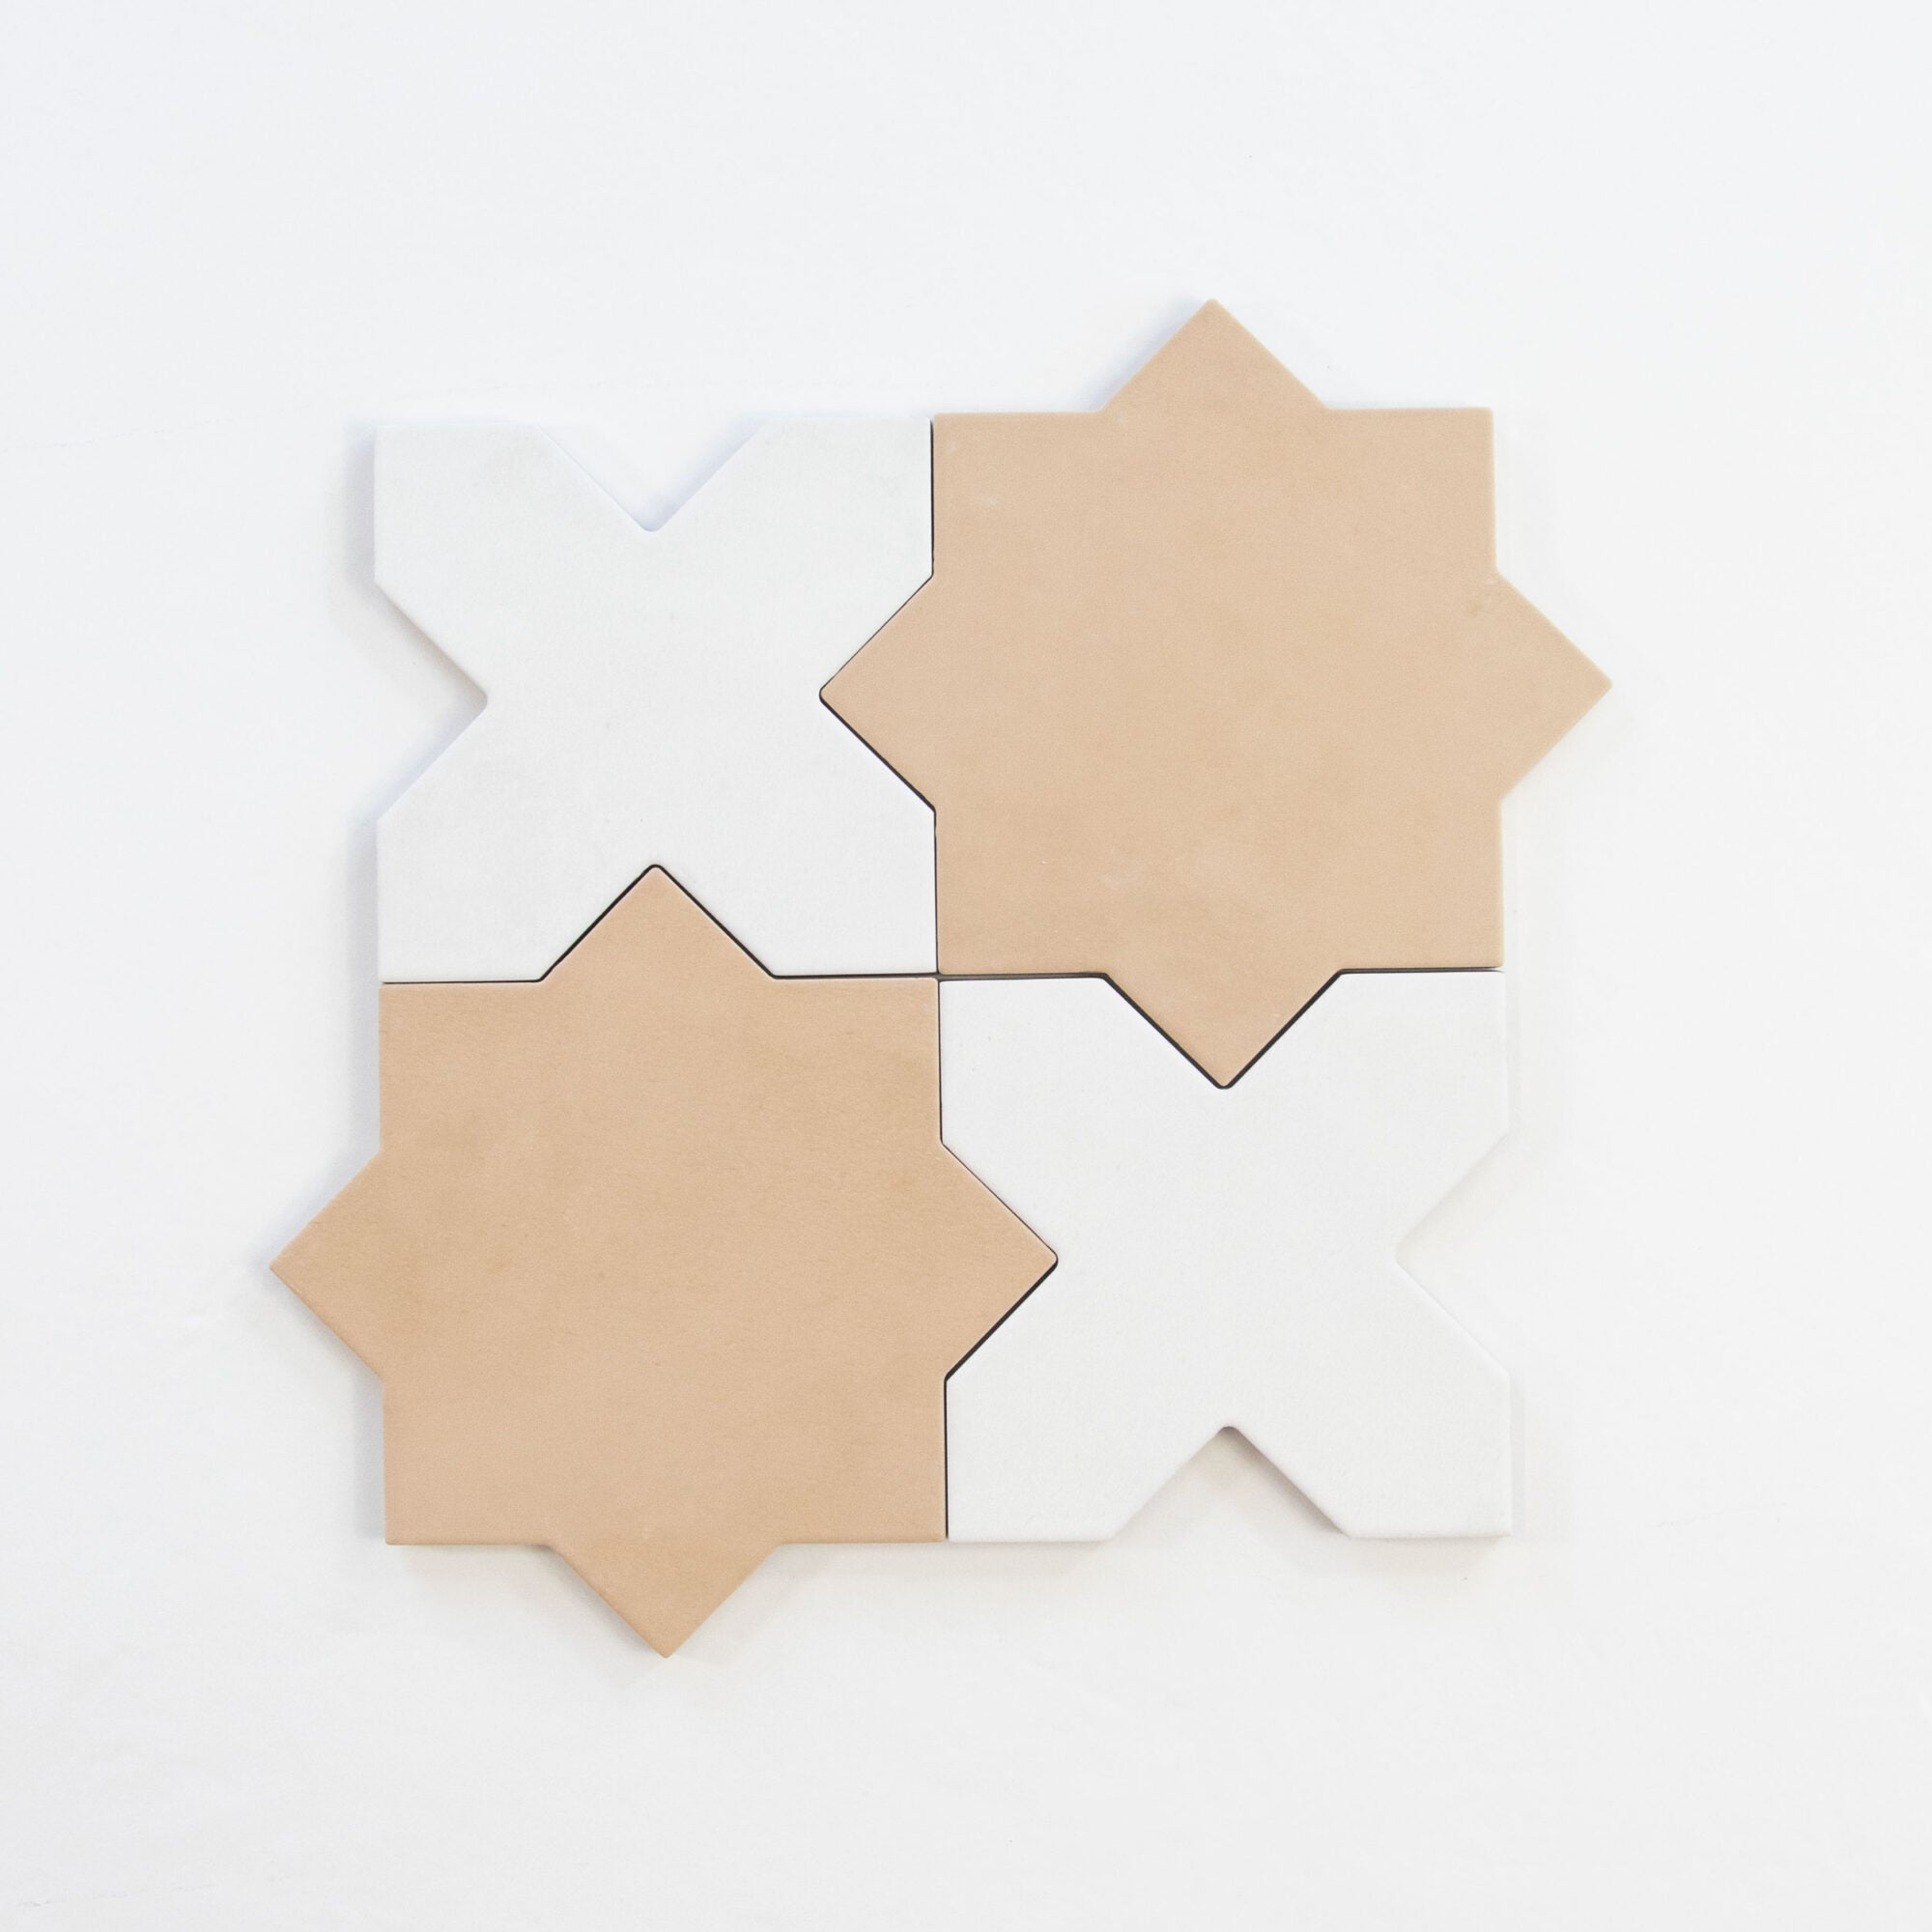 Star & Cross tiles Matt white